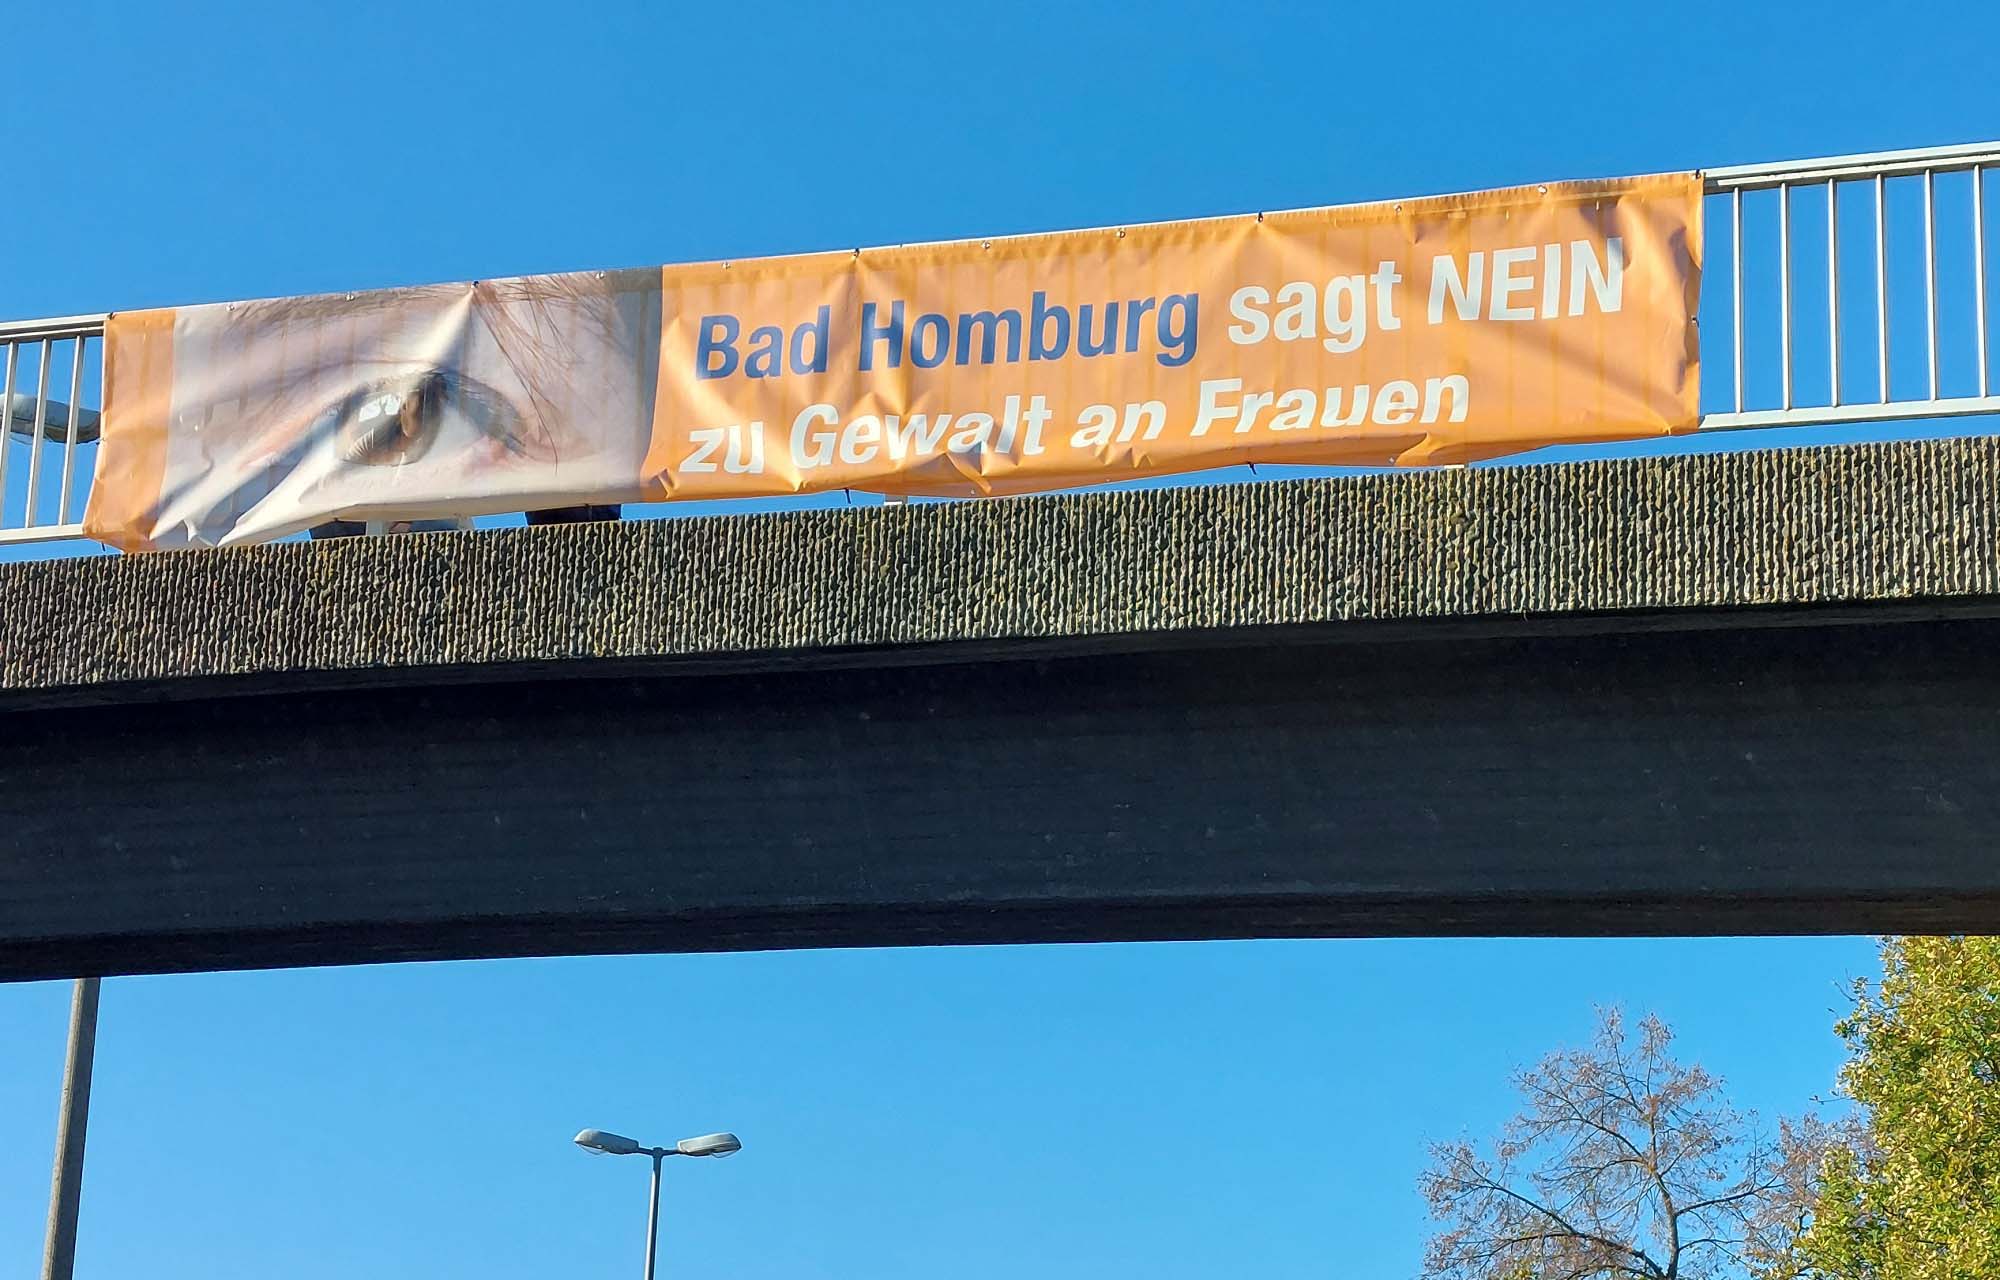 Read more about the article Bad Homburg: Bad Homburg sagt NEIN zu Gewalt gegen Frauen